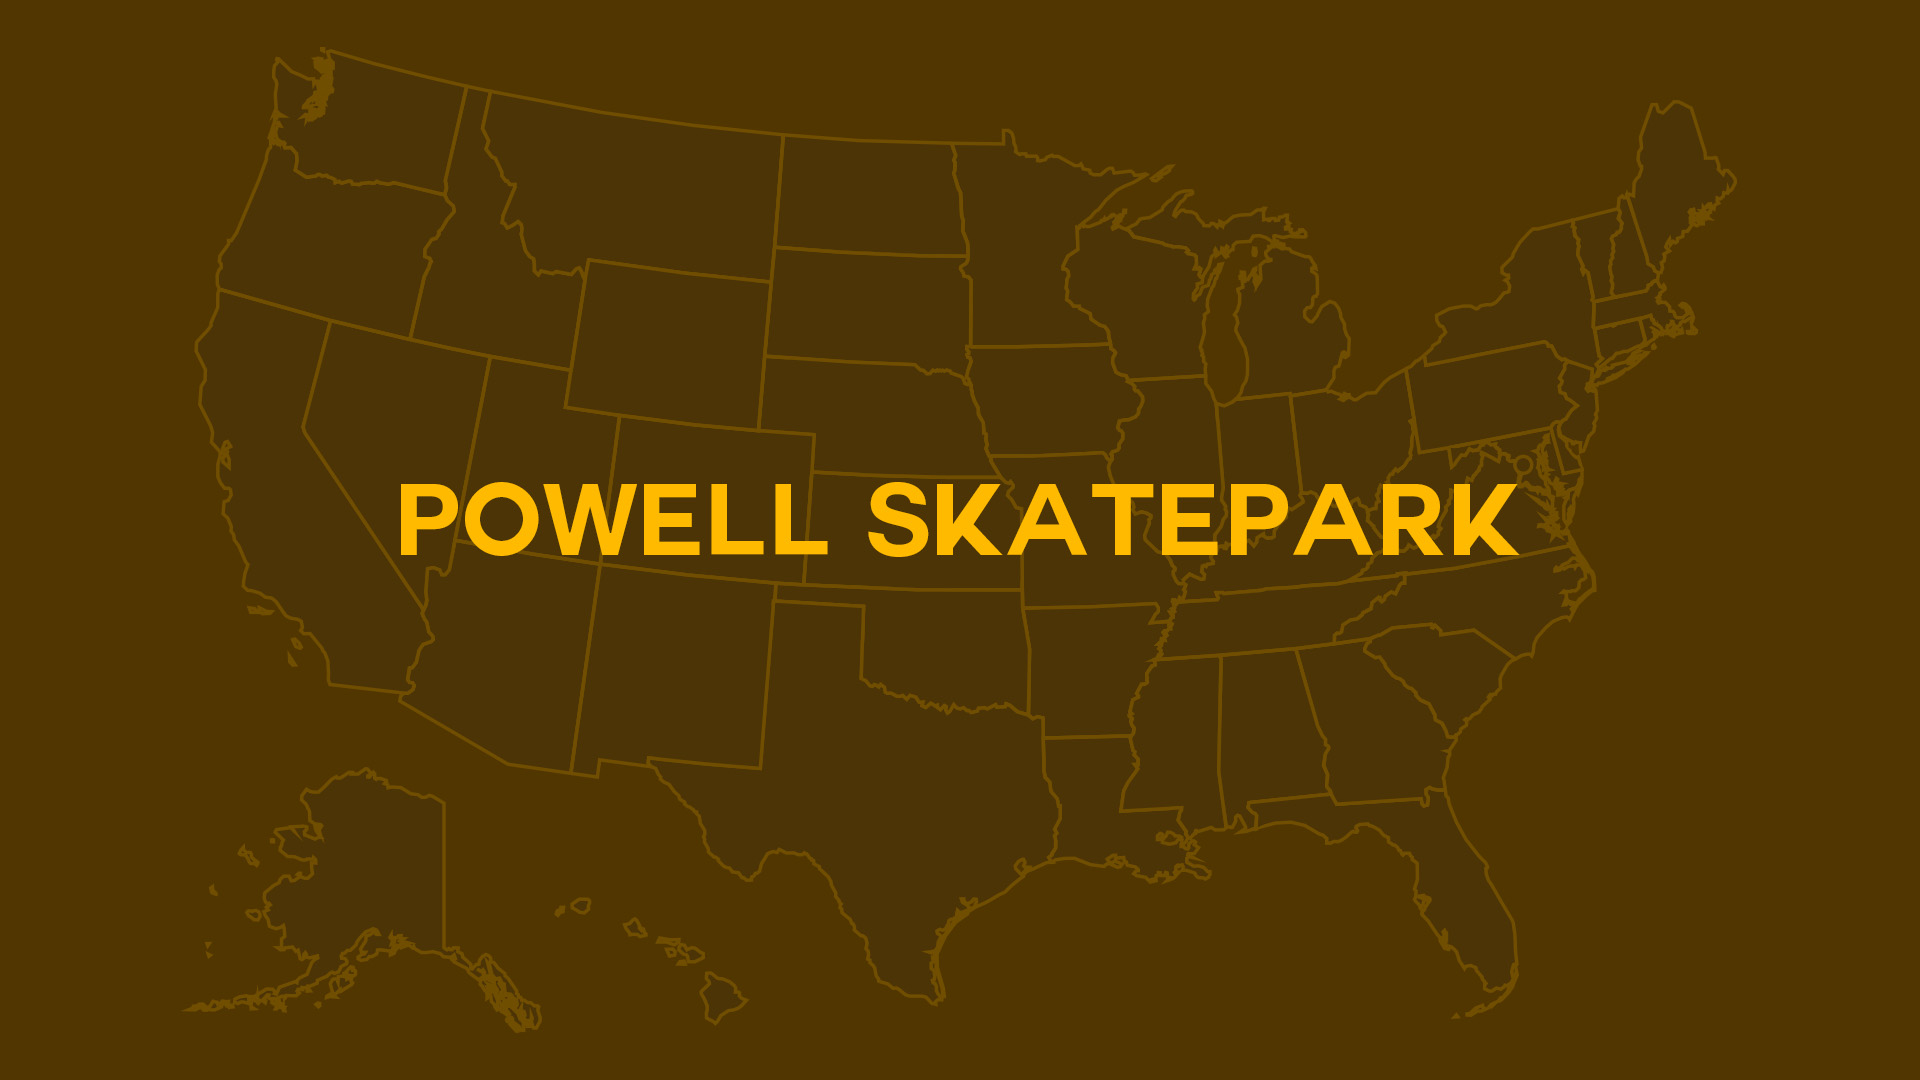 Title card for Powell Skatepark